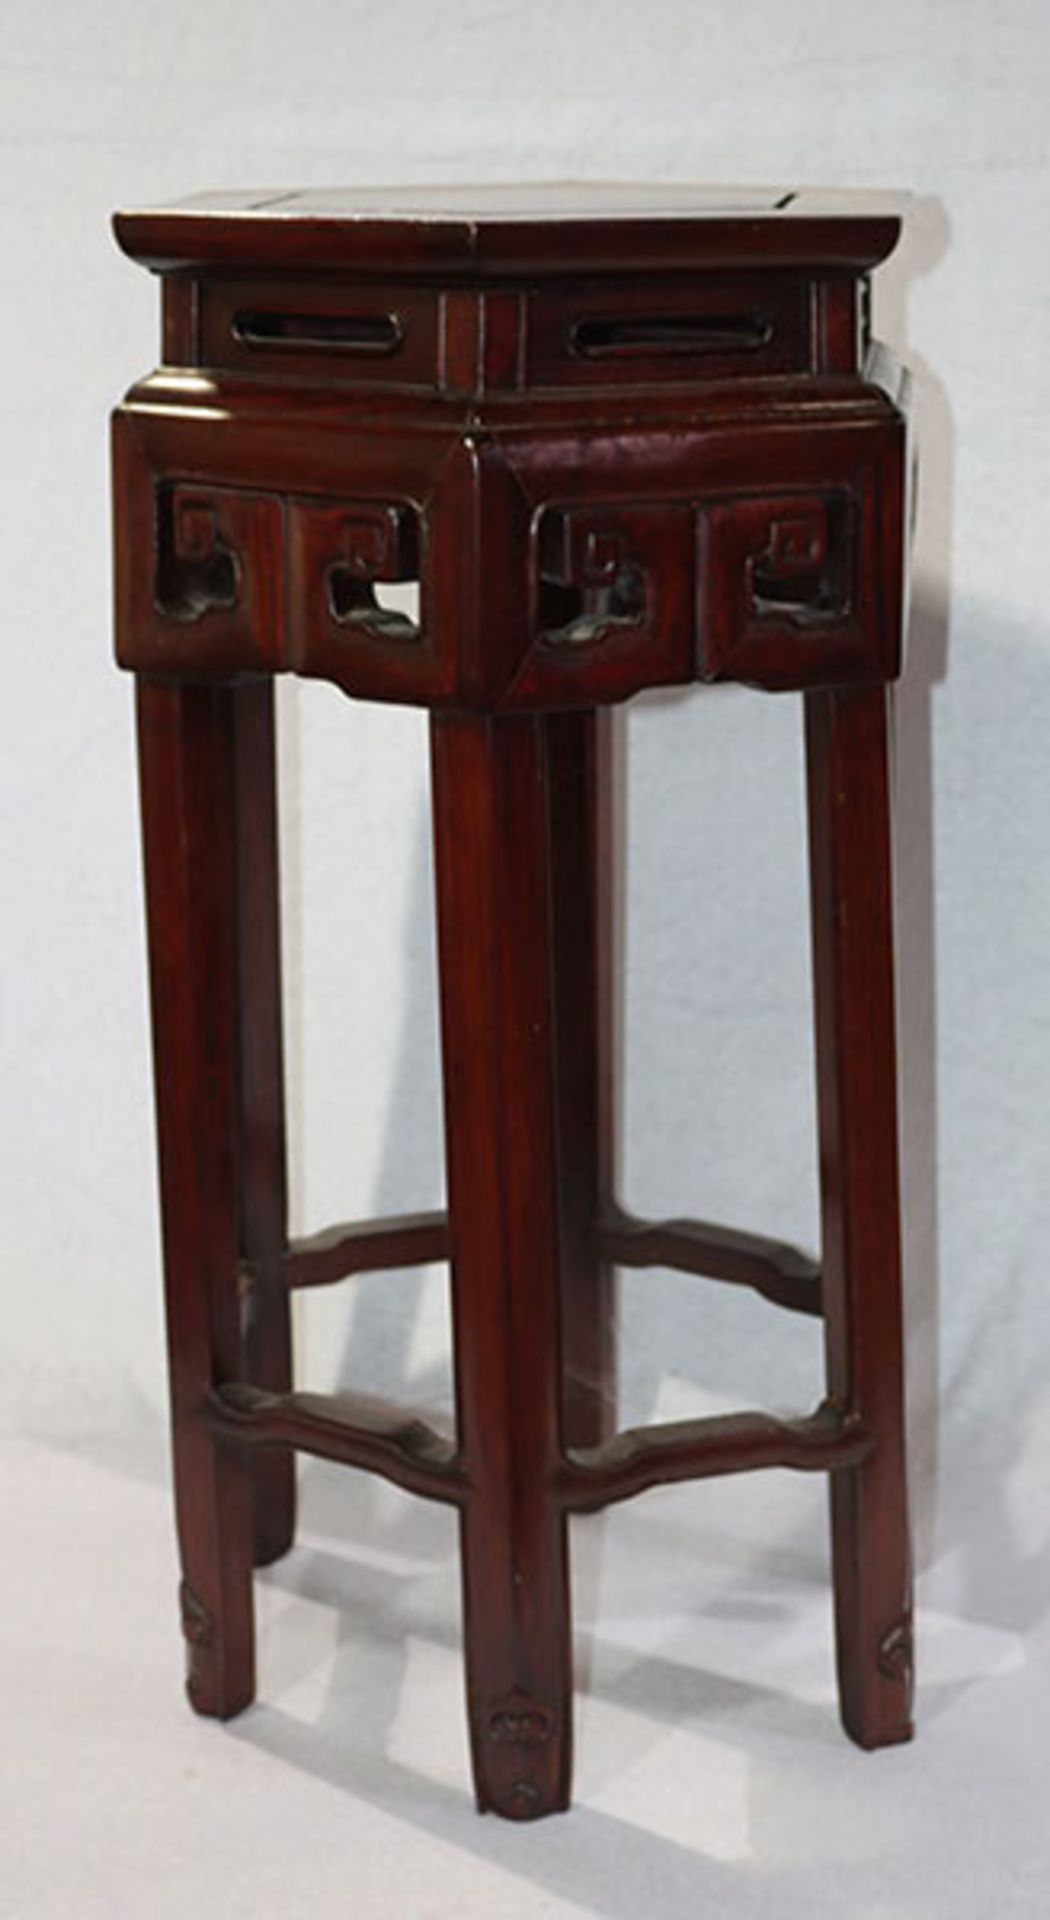 Asiatischer Holz Blumenhocker in sechseckier Form, H 68 cm, D 33 cm, leichte Gebrauchsspuren